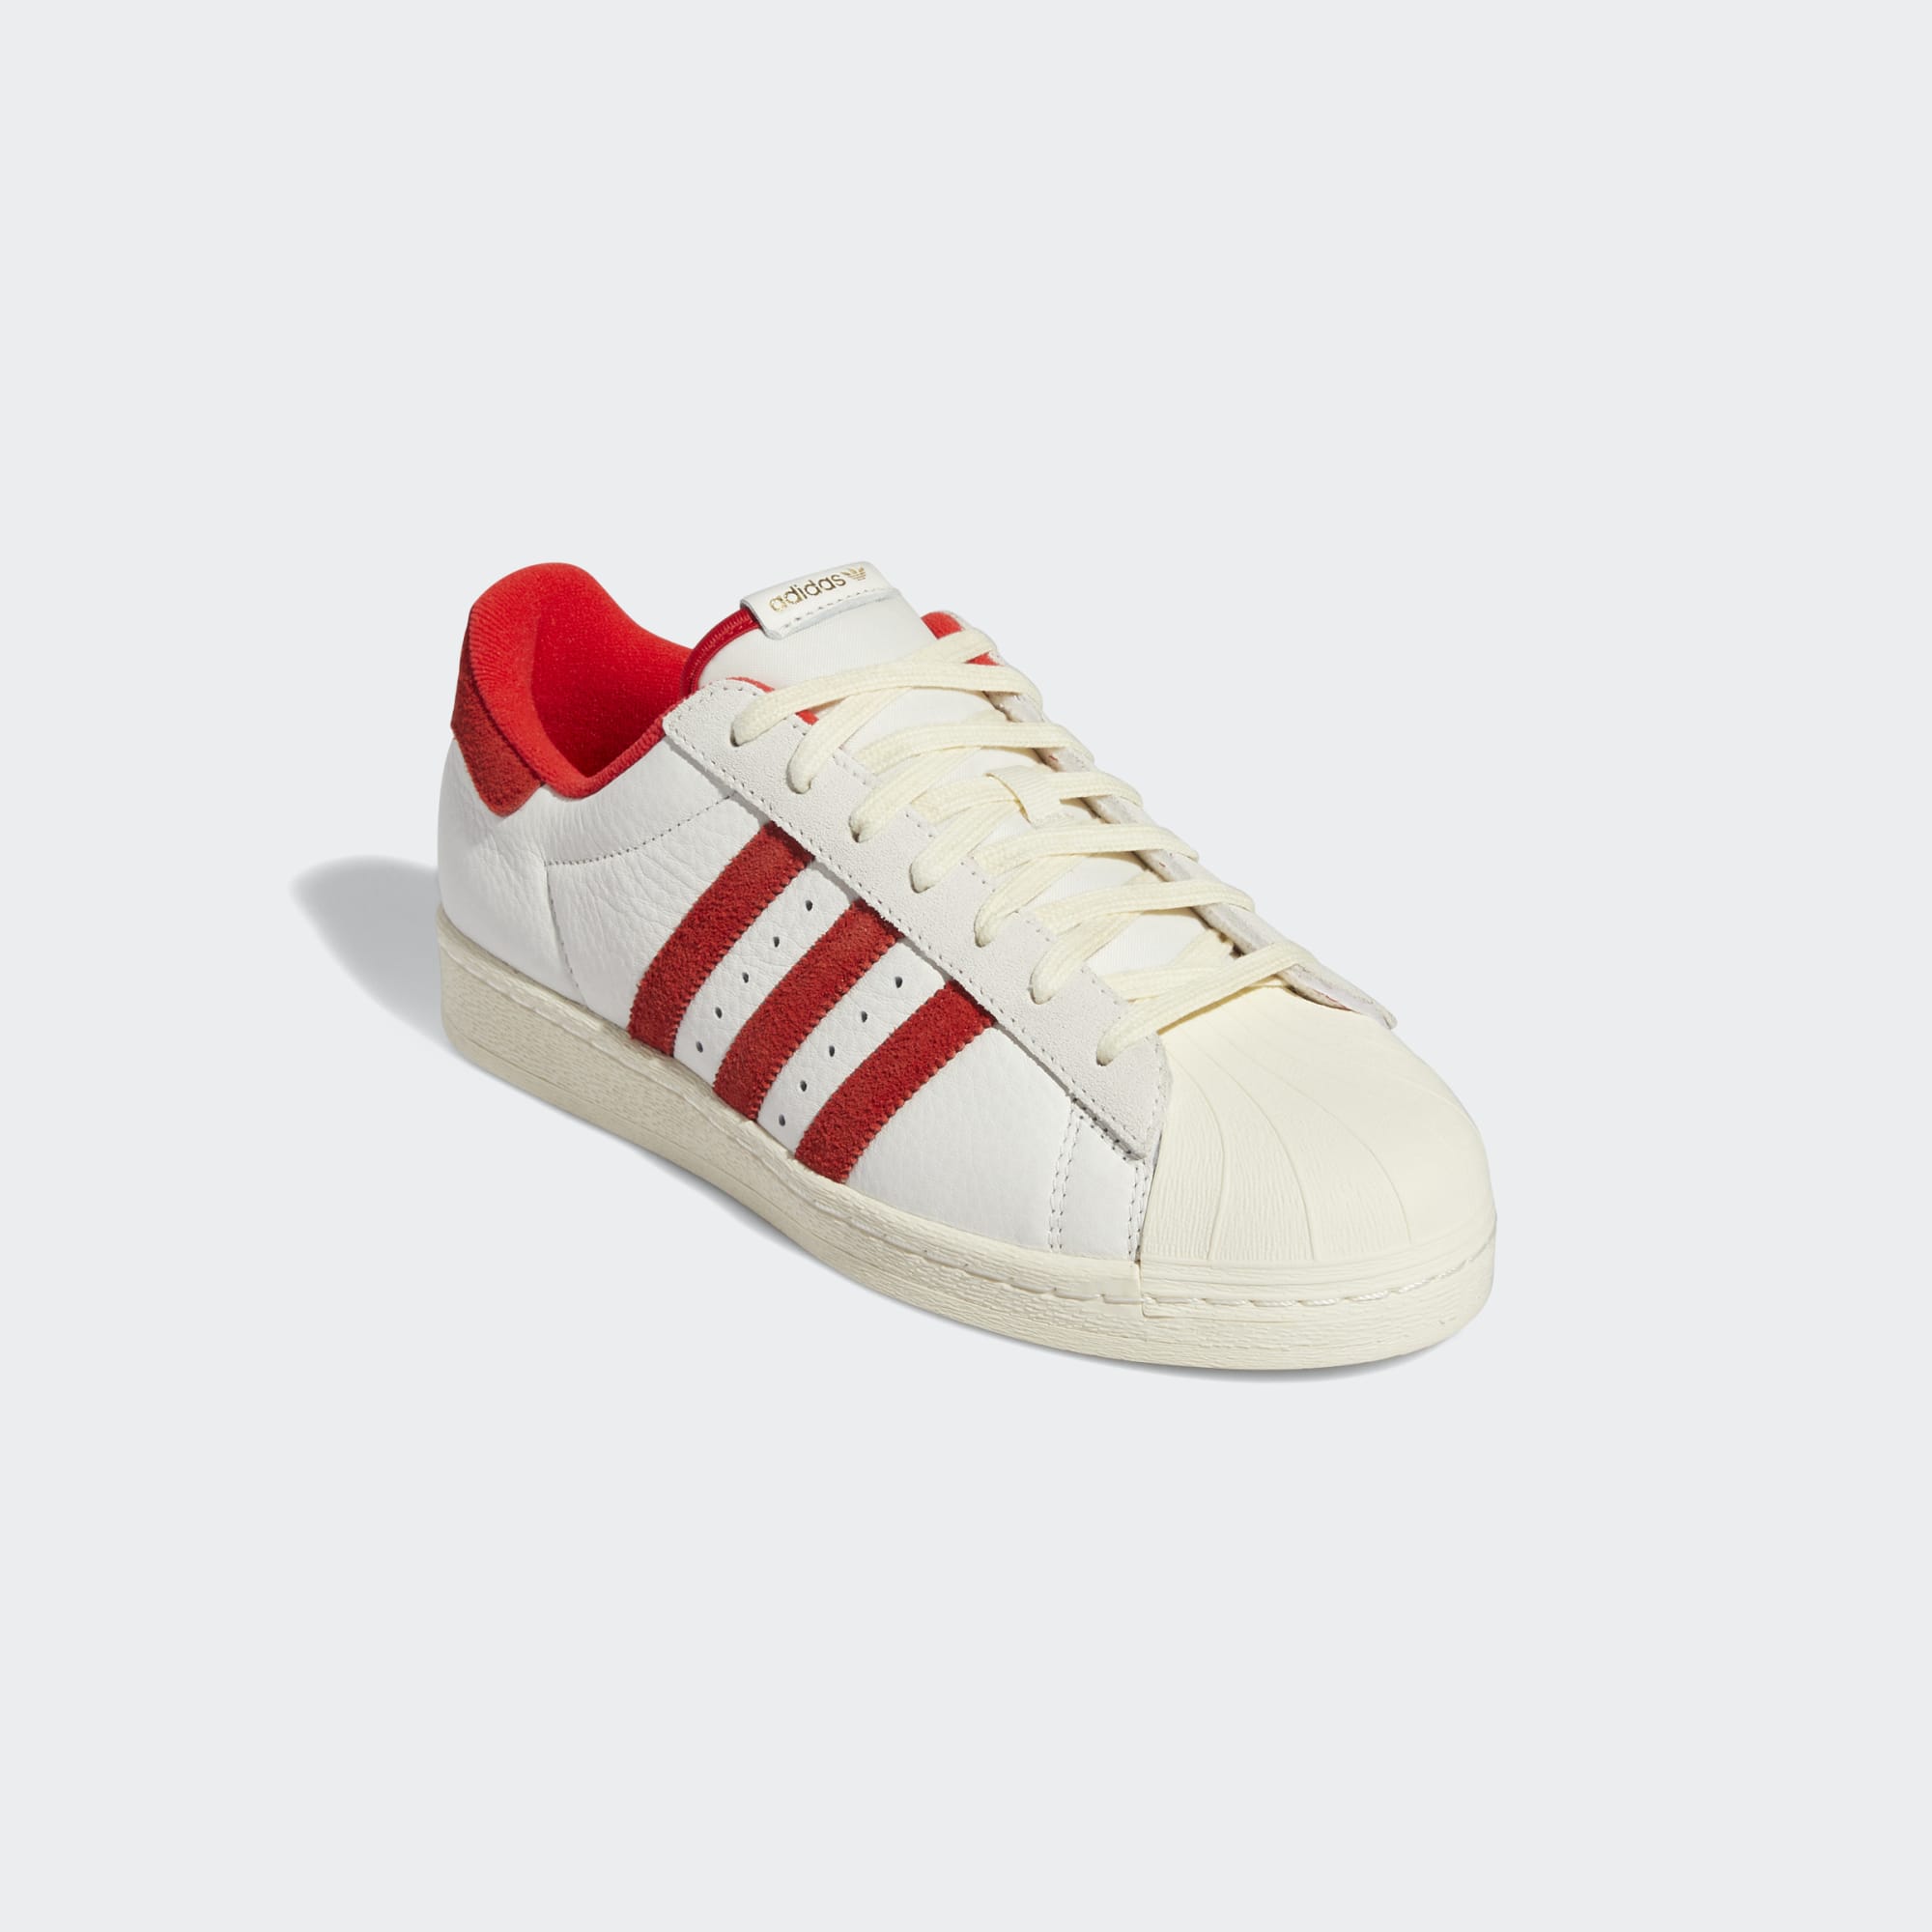 Adidas Superstar 82 White Red